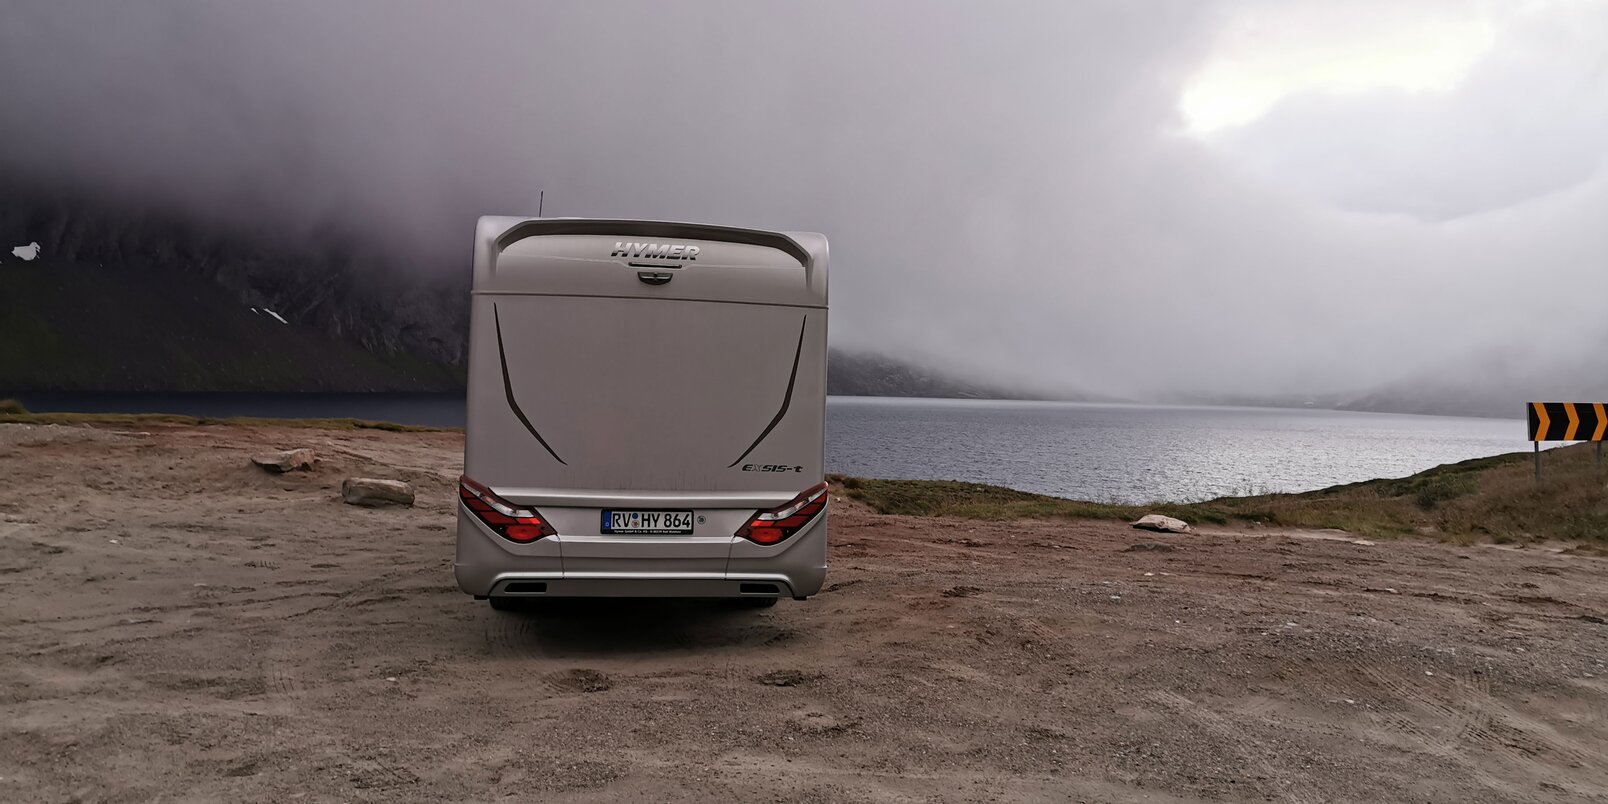 Reisemobil HYMER Exsis-t von hinten am kiesigen Ufer in einem wolkenverhangenen Fjord